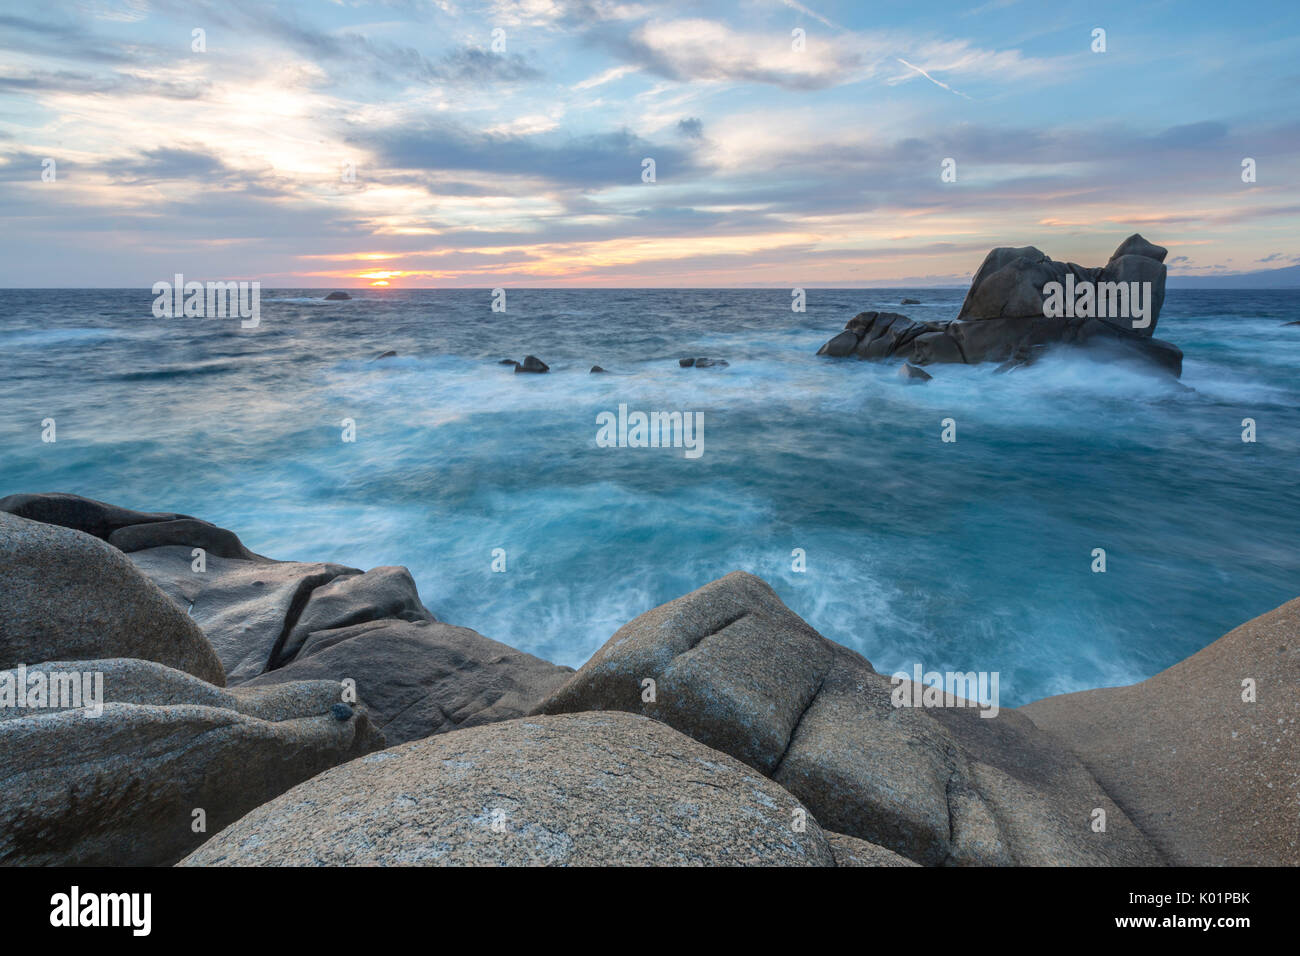 La lumière du coucher de soleil sur la mer bleue encadrée de rochers Capo Testa Santa Teresa di Gallura Province de Sassari Sardaigne Italie Europe Banque D'Images